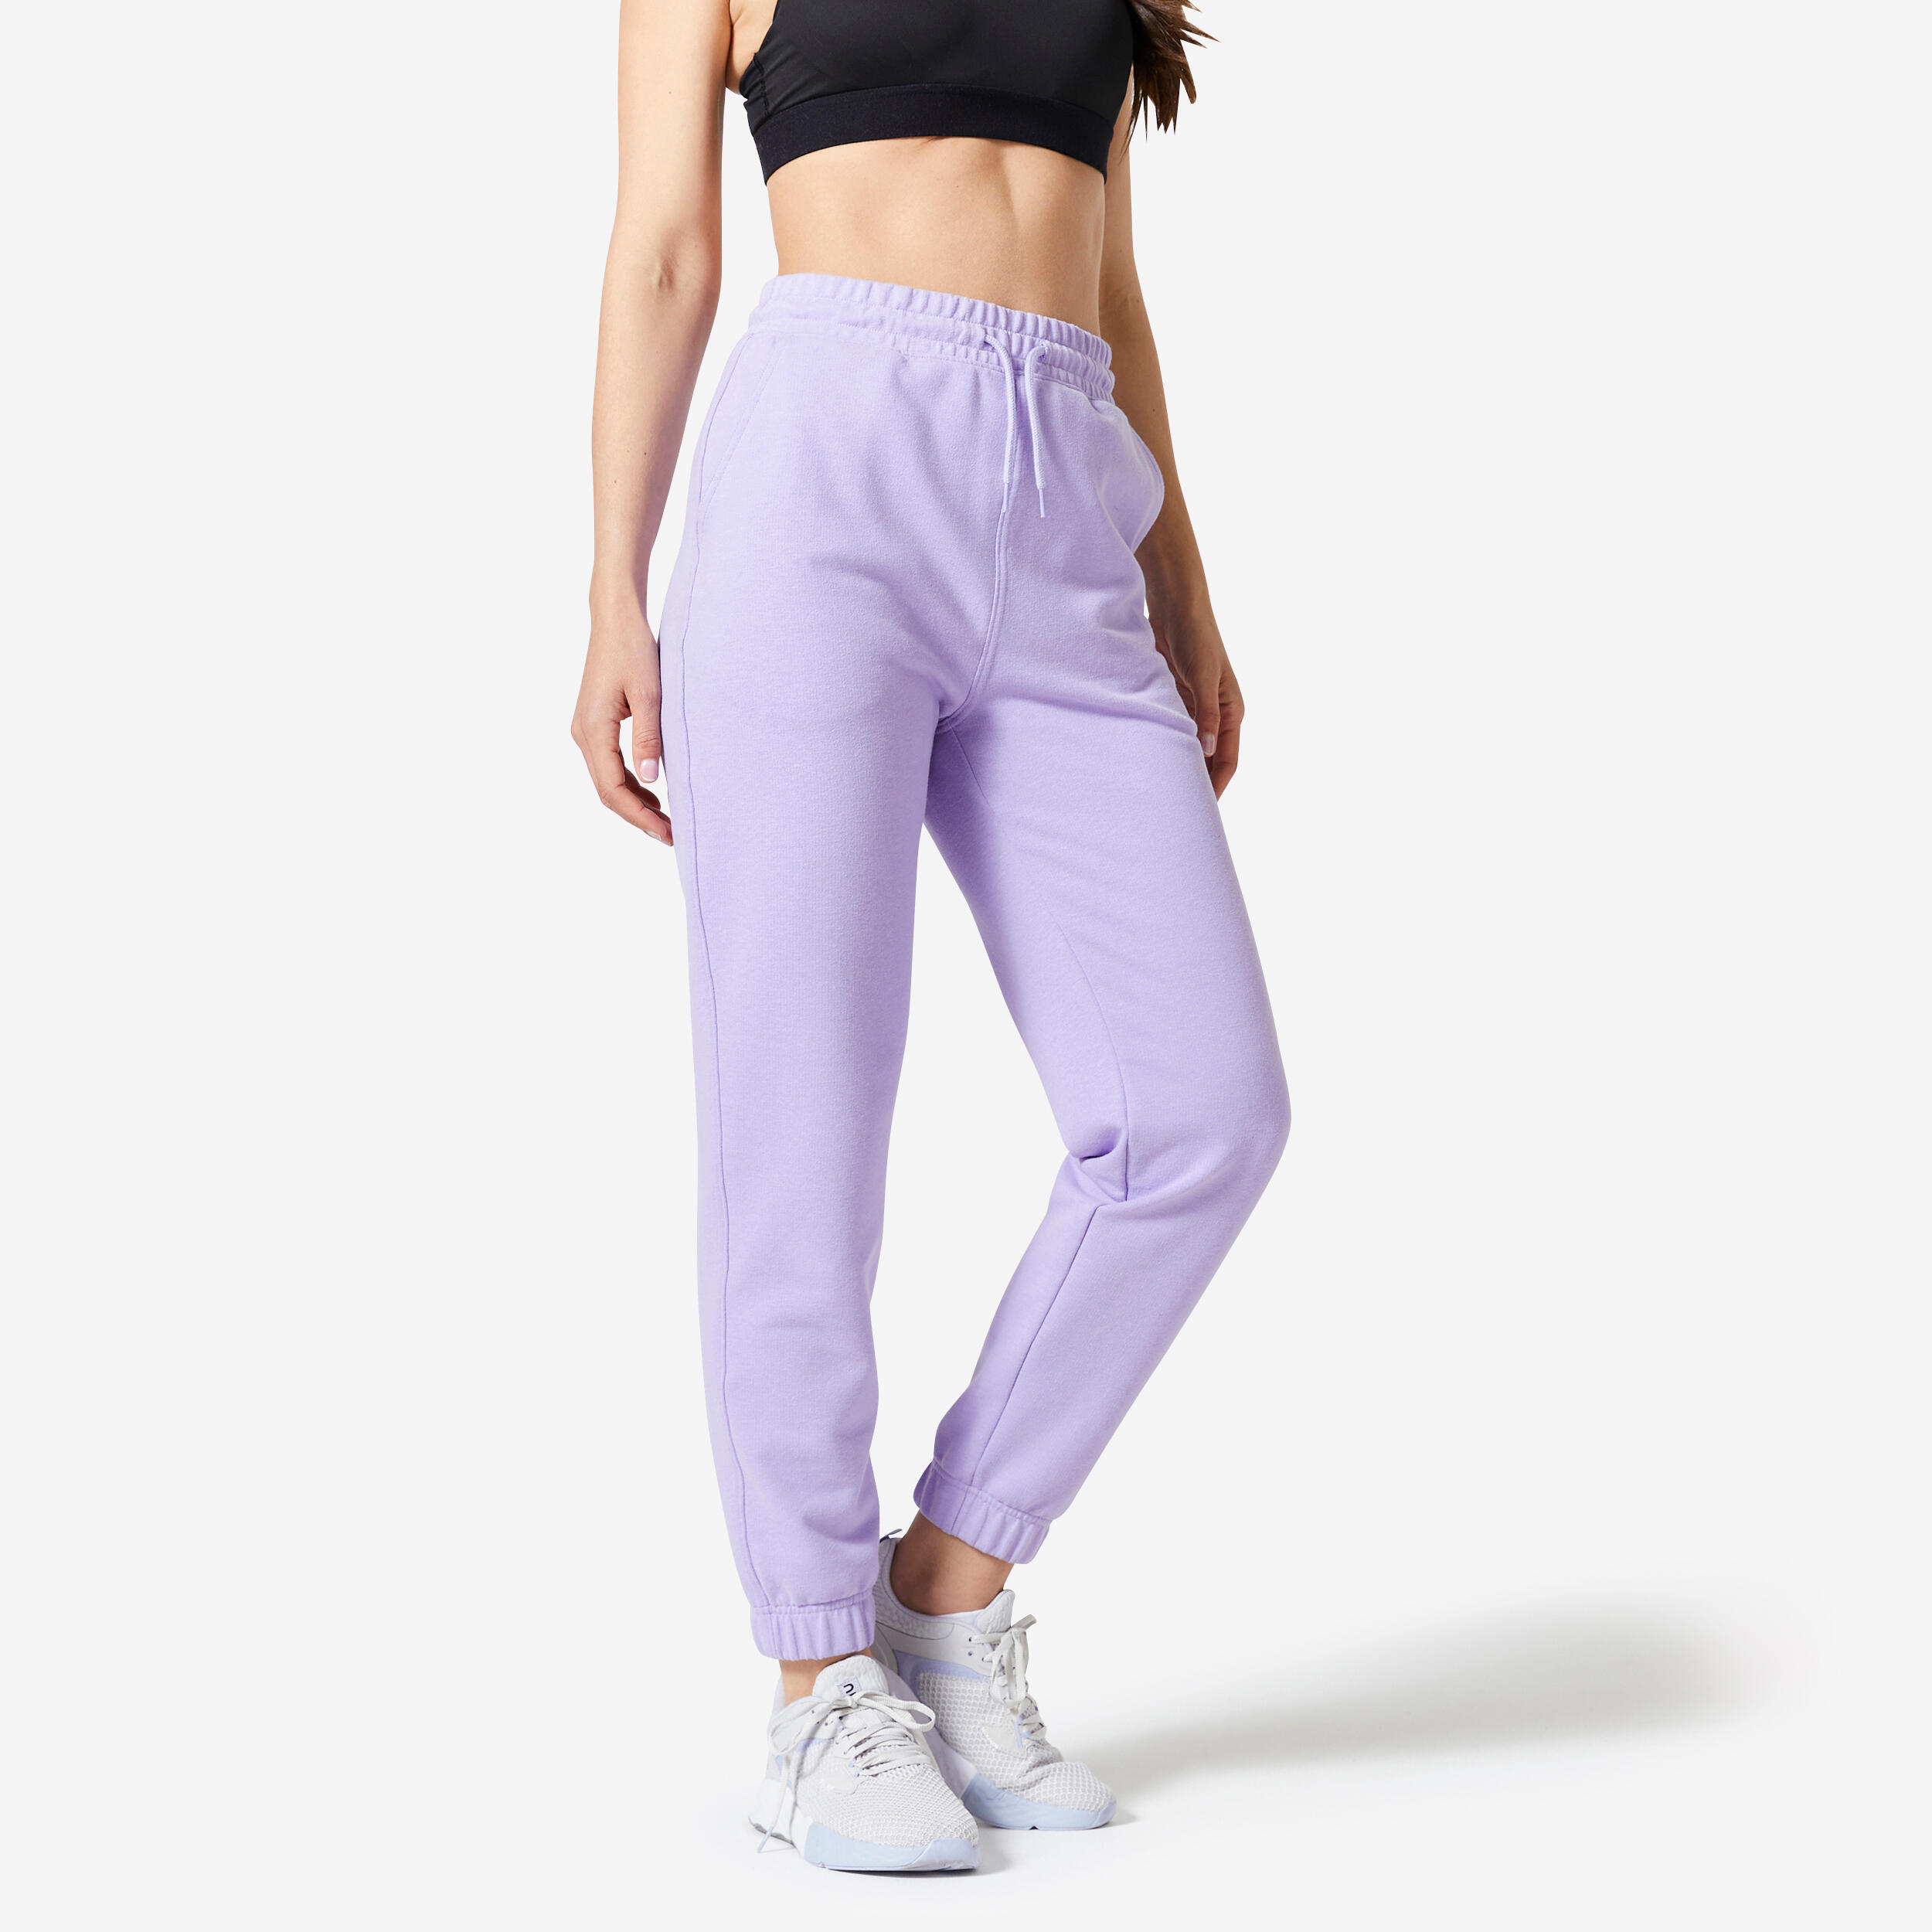 https://contents.mediadecathlon.com/p2510082/d9914b1cd8ba2eff34c793e0f309e509d418cf91b722d3260939ba9ebb75acb0/womens-fitness-pants-500-essentials-purple.jpg